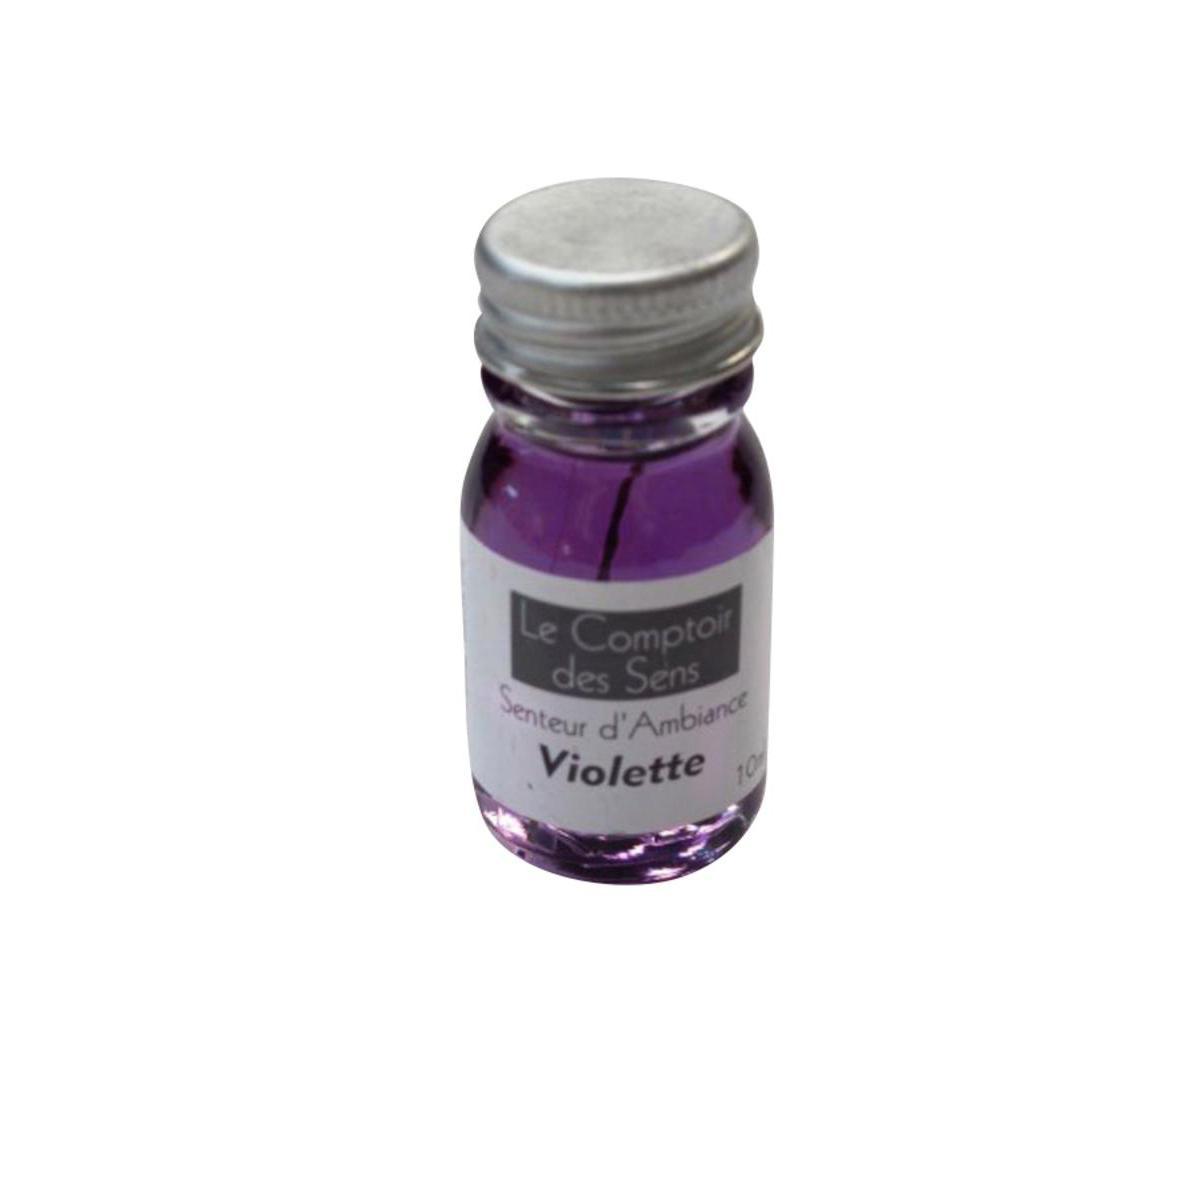 Extrait senteur Violette - Verre - 10 ml - Violet